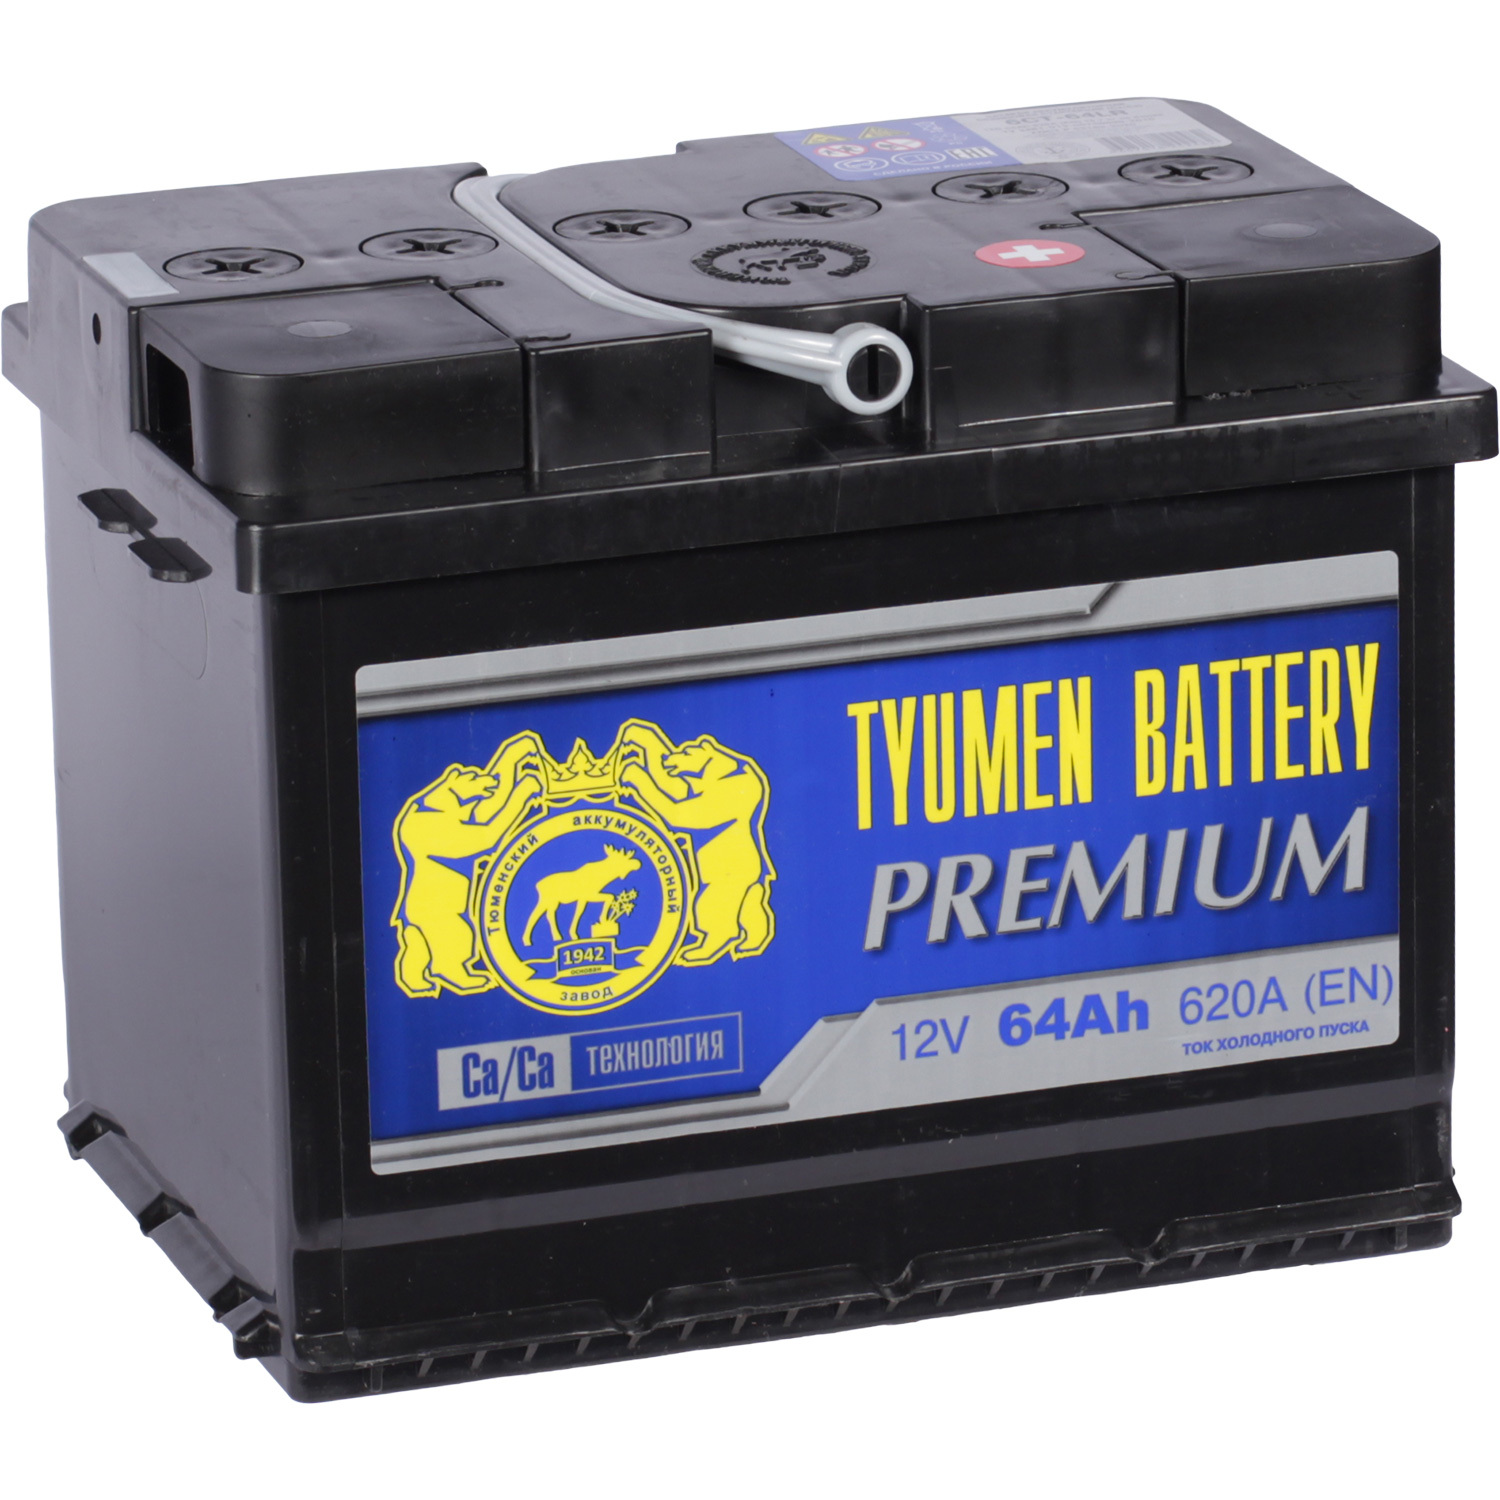 Tyumen Battery Автомобильный аккумулятор Tyumen Battery Premium 64 Ач обратная полярность L2 tyumen battery автомобильный аккумулятор tyumen battery asia 40 ач обратная полярность b19l